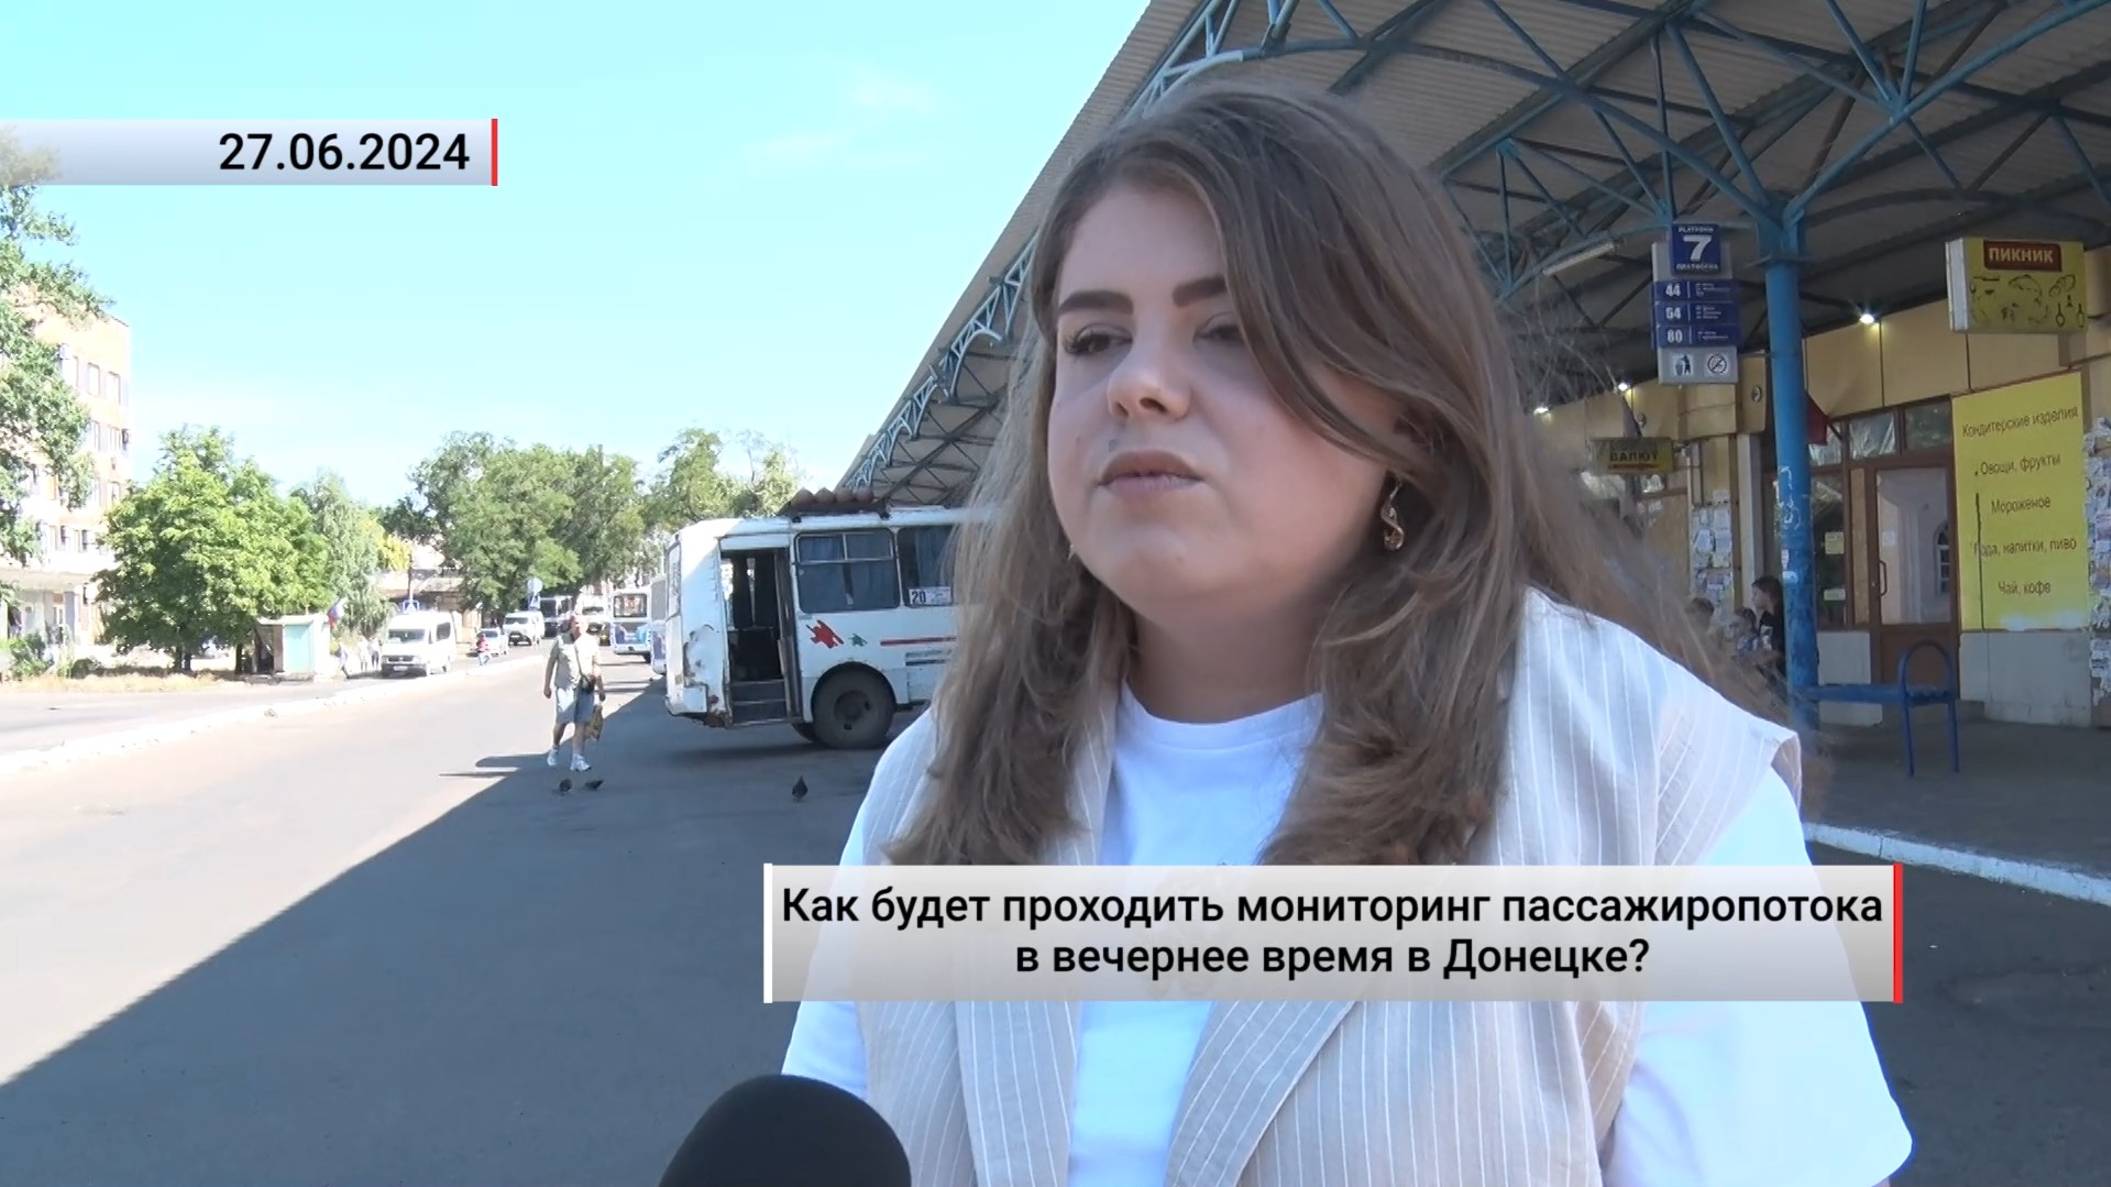 Как будет проходить мониторинг пассажиропотока в вечернее время в Донецке Актуально. 27.06.2024